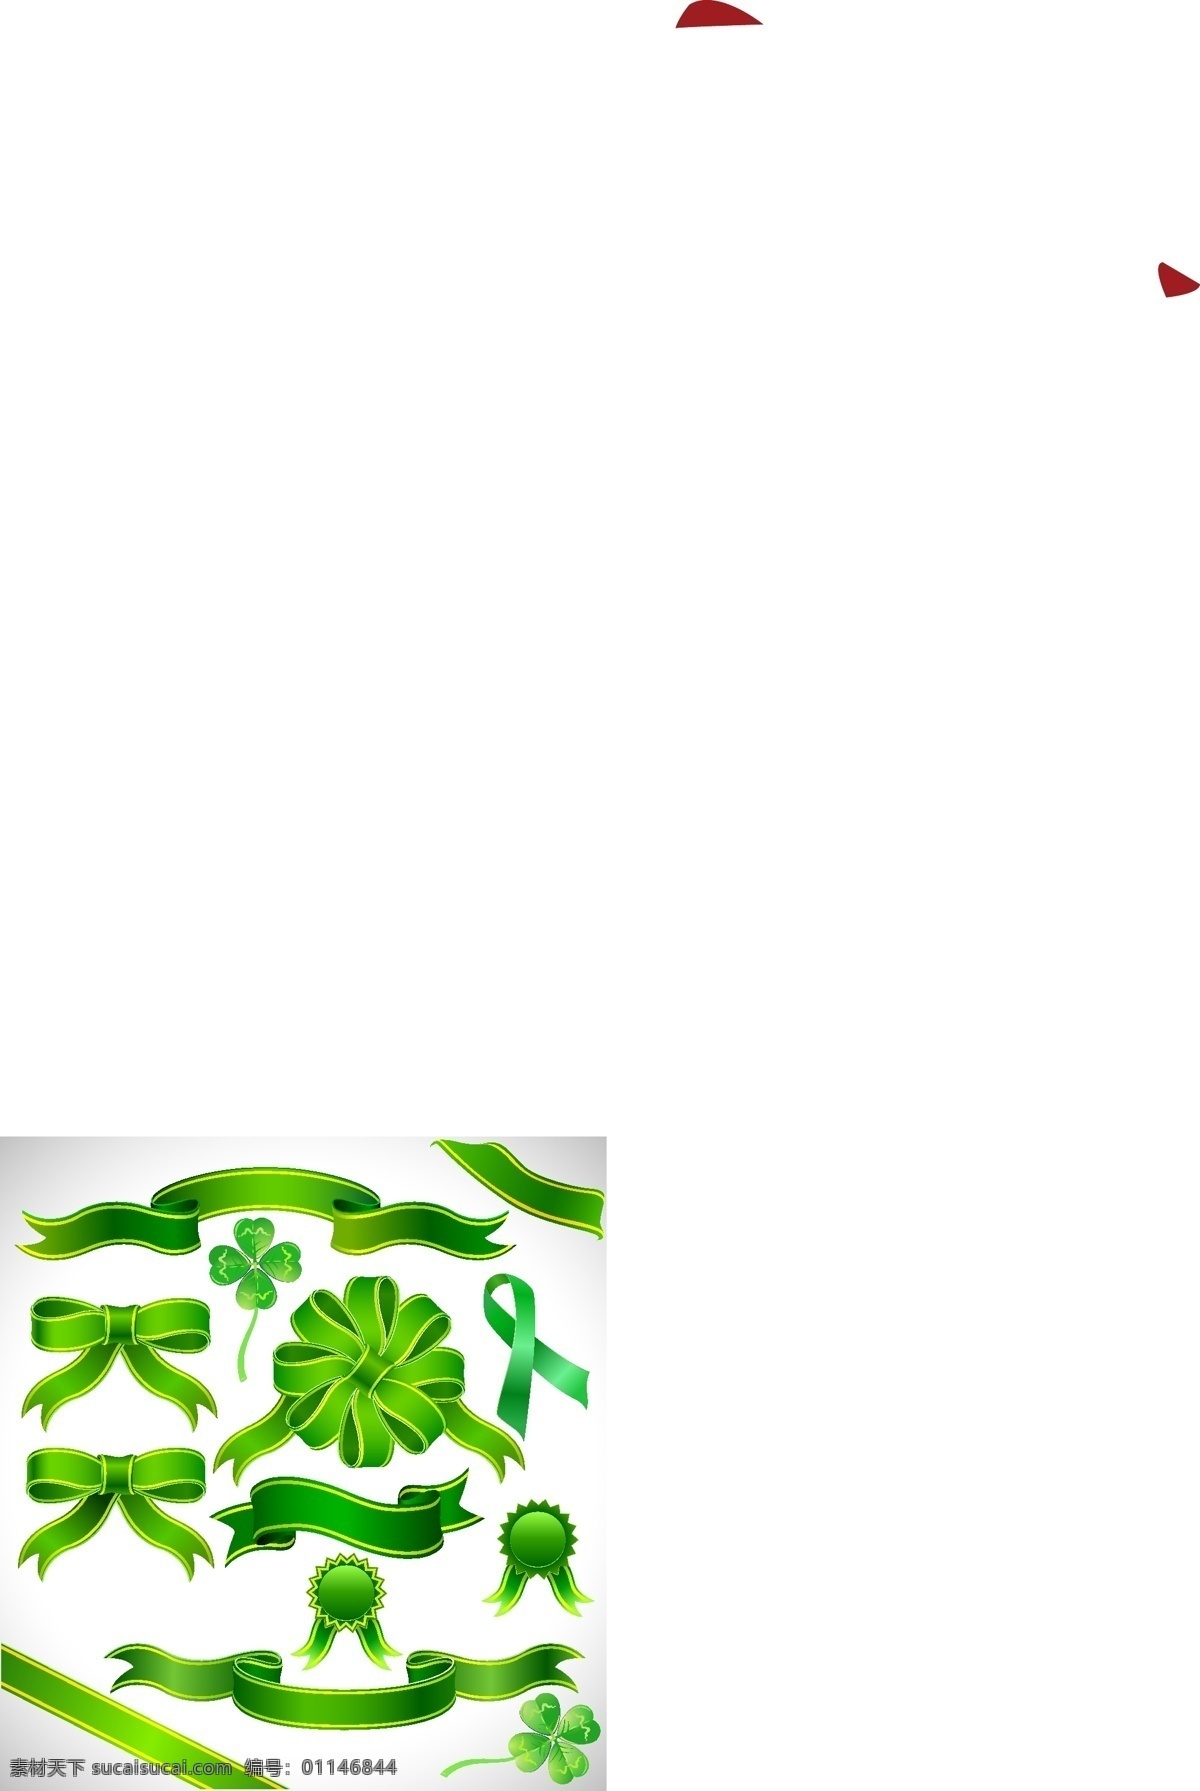 绿色 蝴蝶结 飘带 矢量图 横幅 徽章 丝带 四叶草 装饰 矢量 amp 边框 其他矢量图